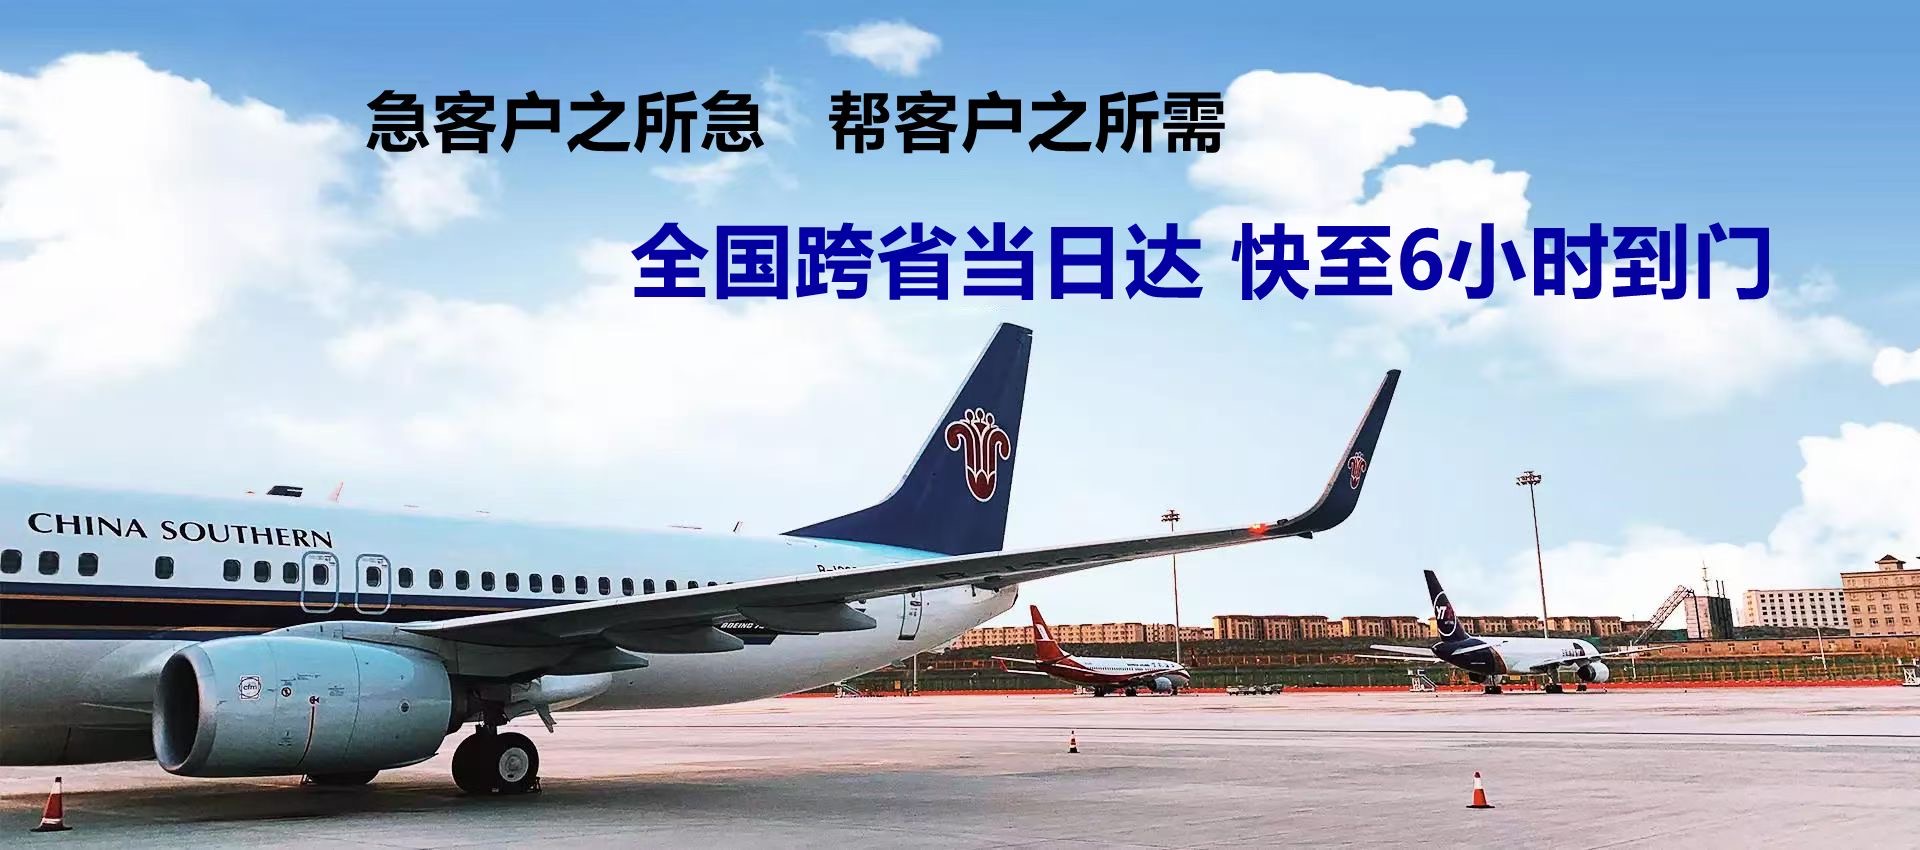 大连市-广州机场航空货运-限时达空运物流公司